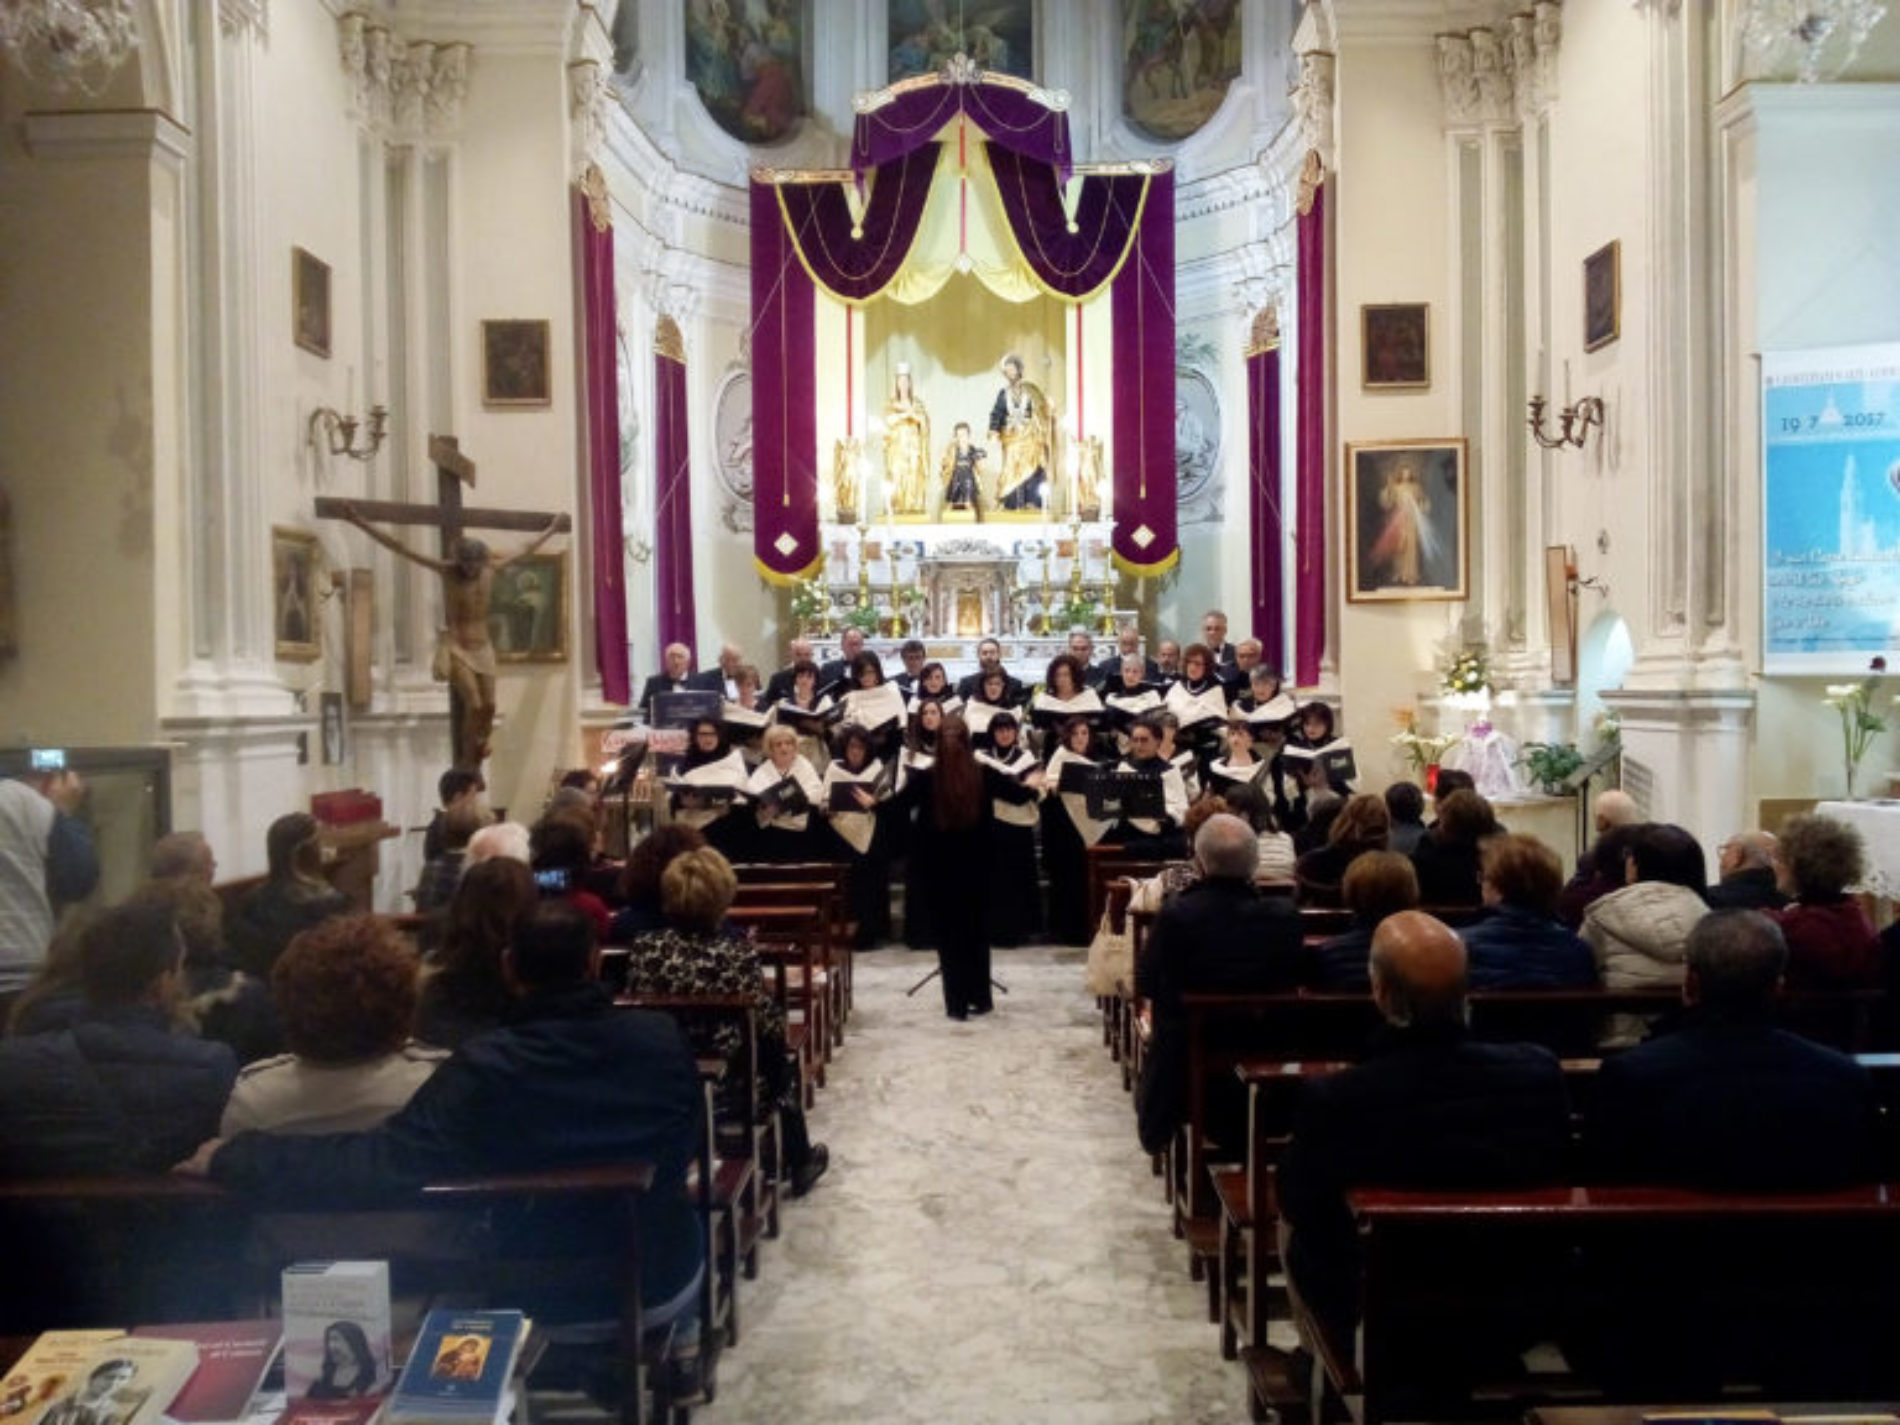 Coro lirico sinfonico Città di Enna: tanti partecipanti e applausi per il concerto nella chiesa San Giuseppe